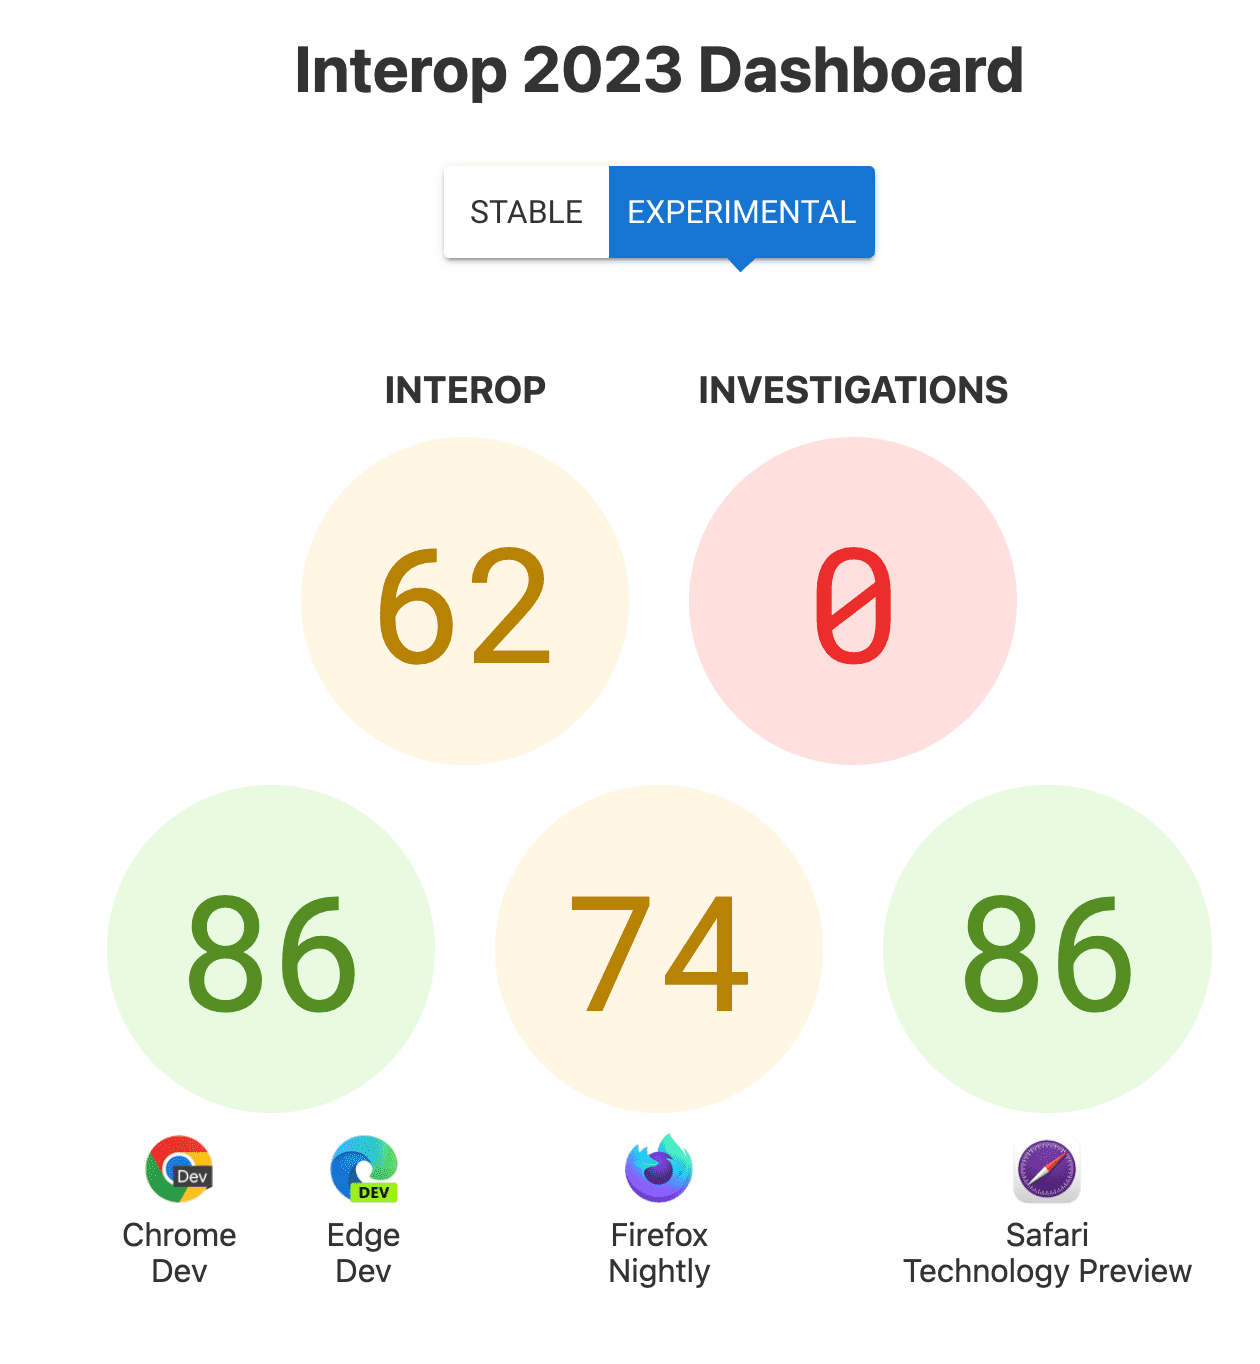 Skor untuk Interop secara keseluruhan: 62, Investigasi: 0, dan skor per browser - 86 untuk Chrome dan Edge, 74 untuk Firefox, 86 untuk Safari Technology Preview.